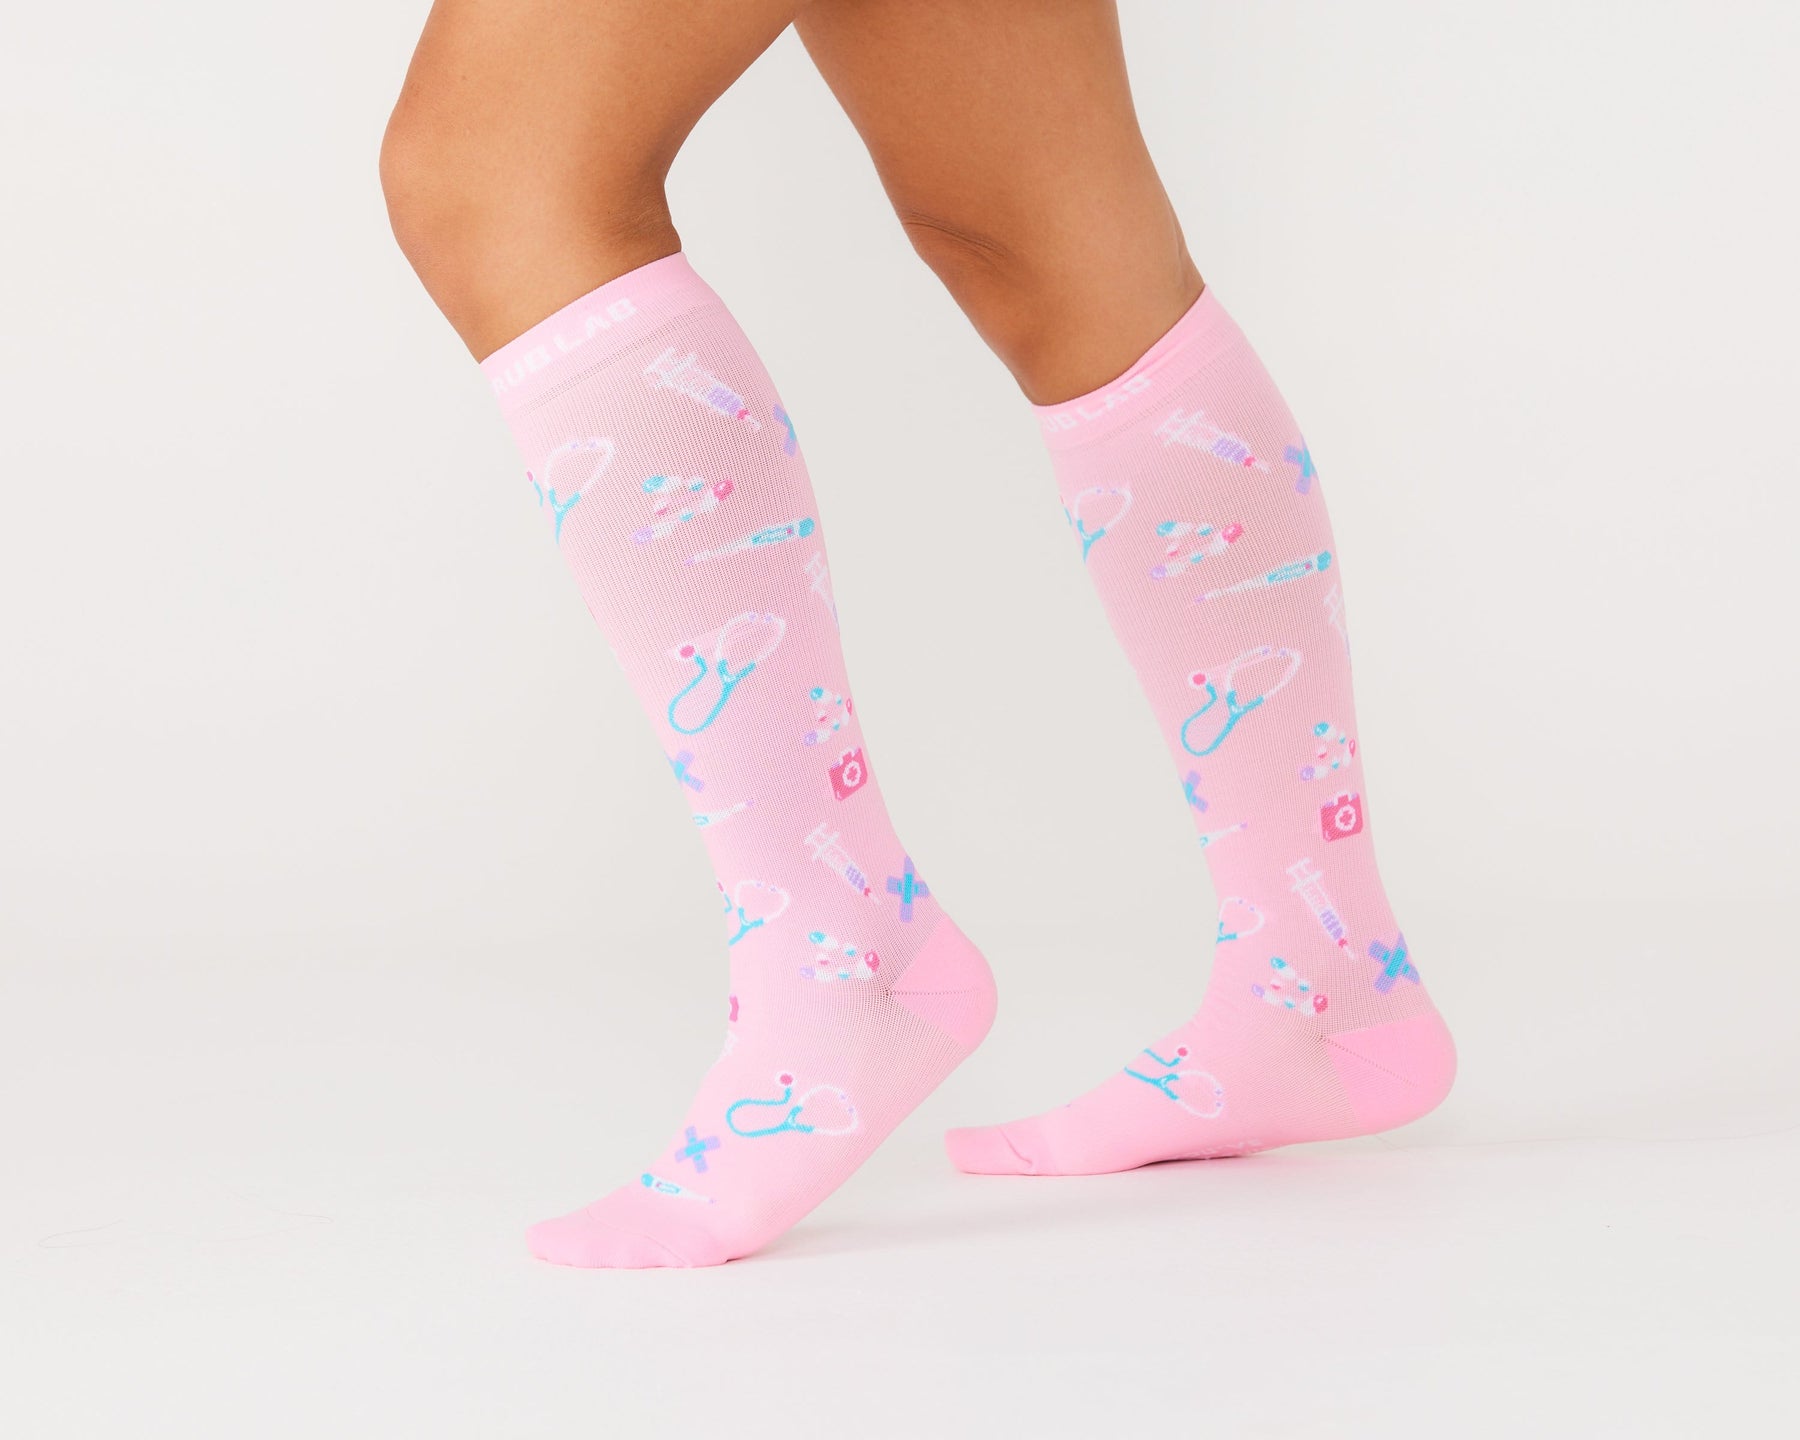 Best JOY Compression Socks for Nurses & Healthcare